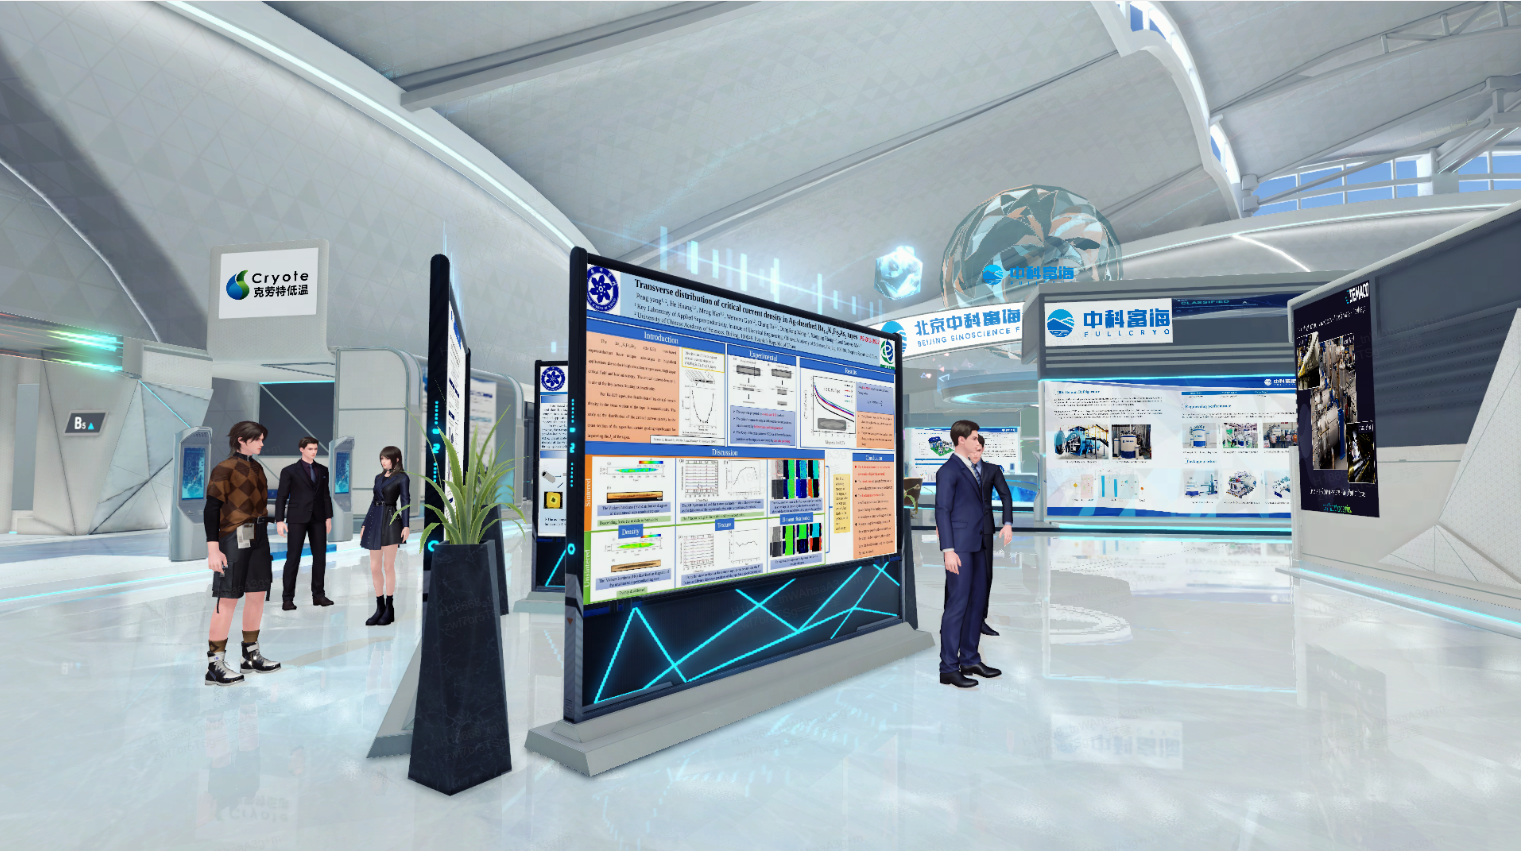 这是一张展示现代科技会议或展览的图片，人们在查看展板，环境设计现代化，以白色和蓝色为主色调。